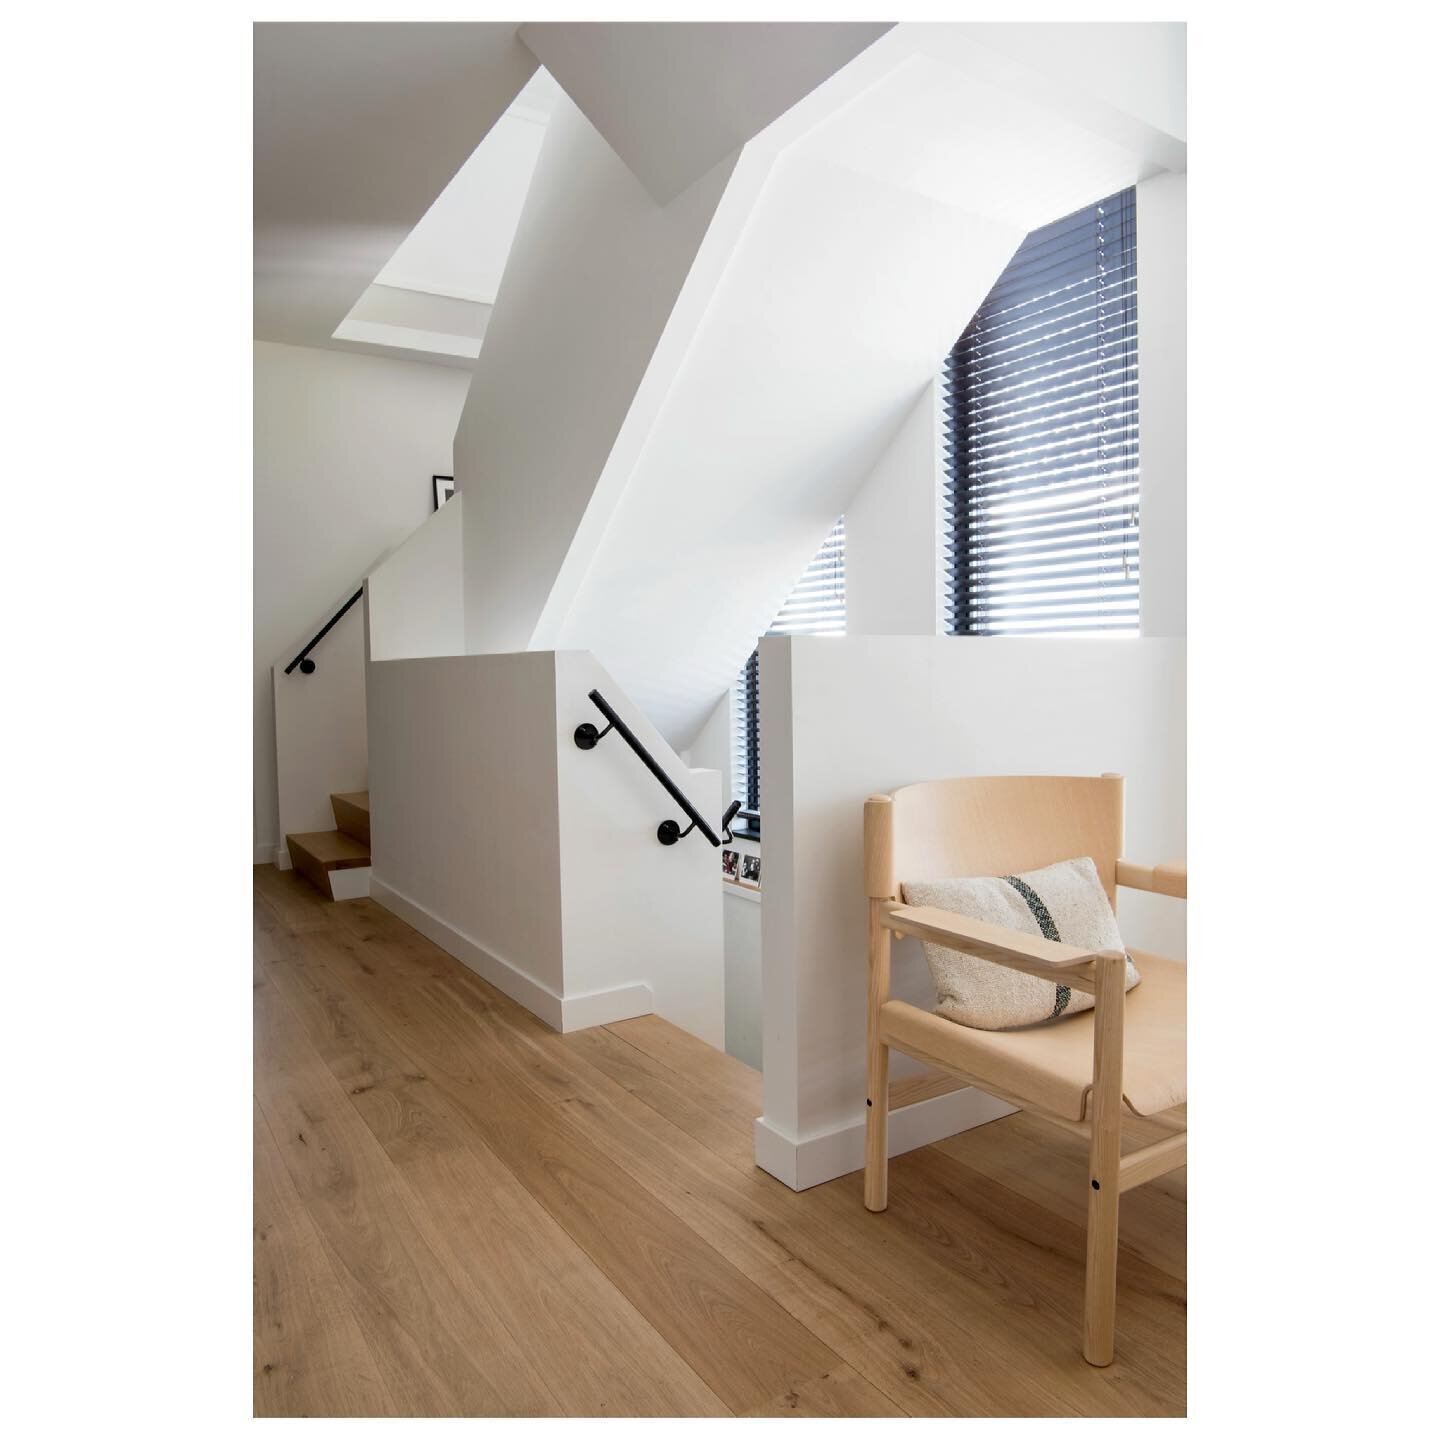 Hallway goals @little_neighbours met de prachtige stoel van @taktcph #hallwaygoals#interiordesign #interieurinspiratie #wonen#modernliving#interi&oslash;r #interiordecor #interior4all #modernhallway#hallwaydeco#designfurniture #designchair#takt#inter